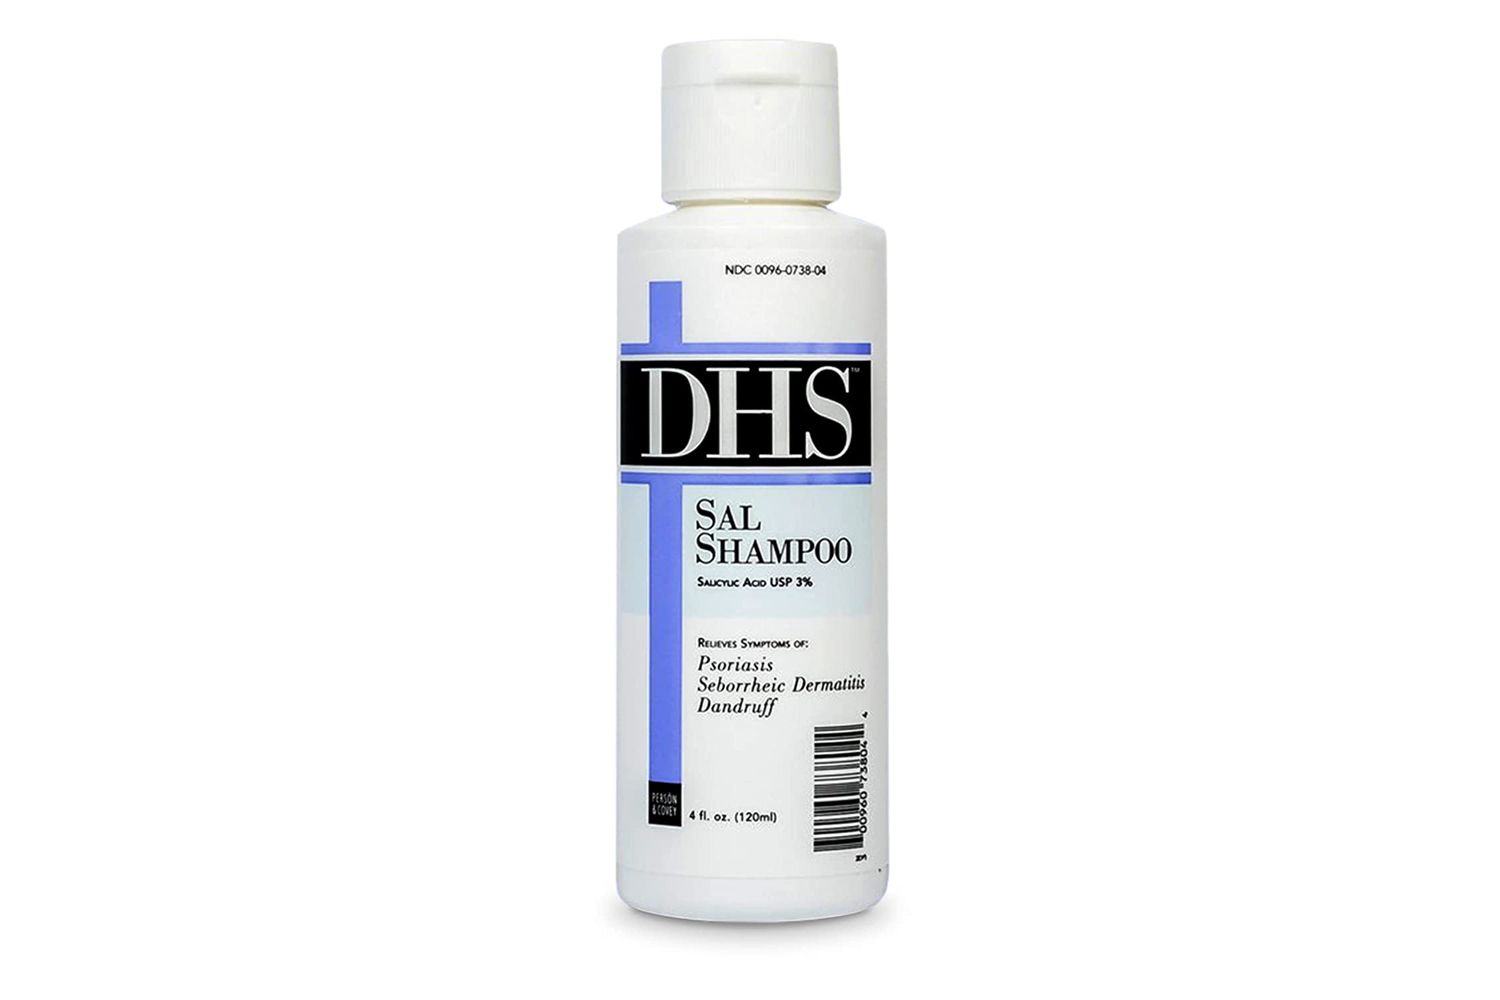 Shampoo DHS SAL